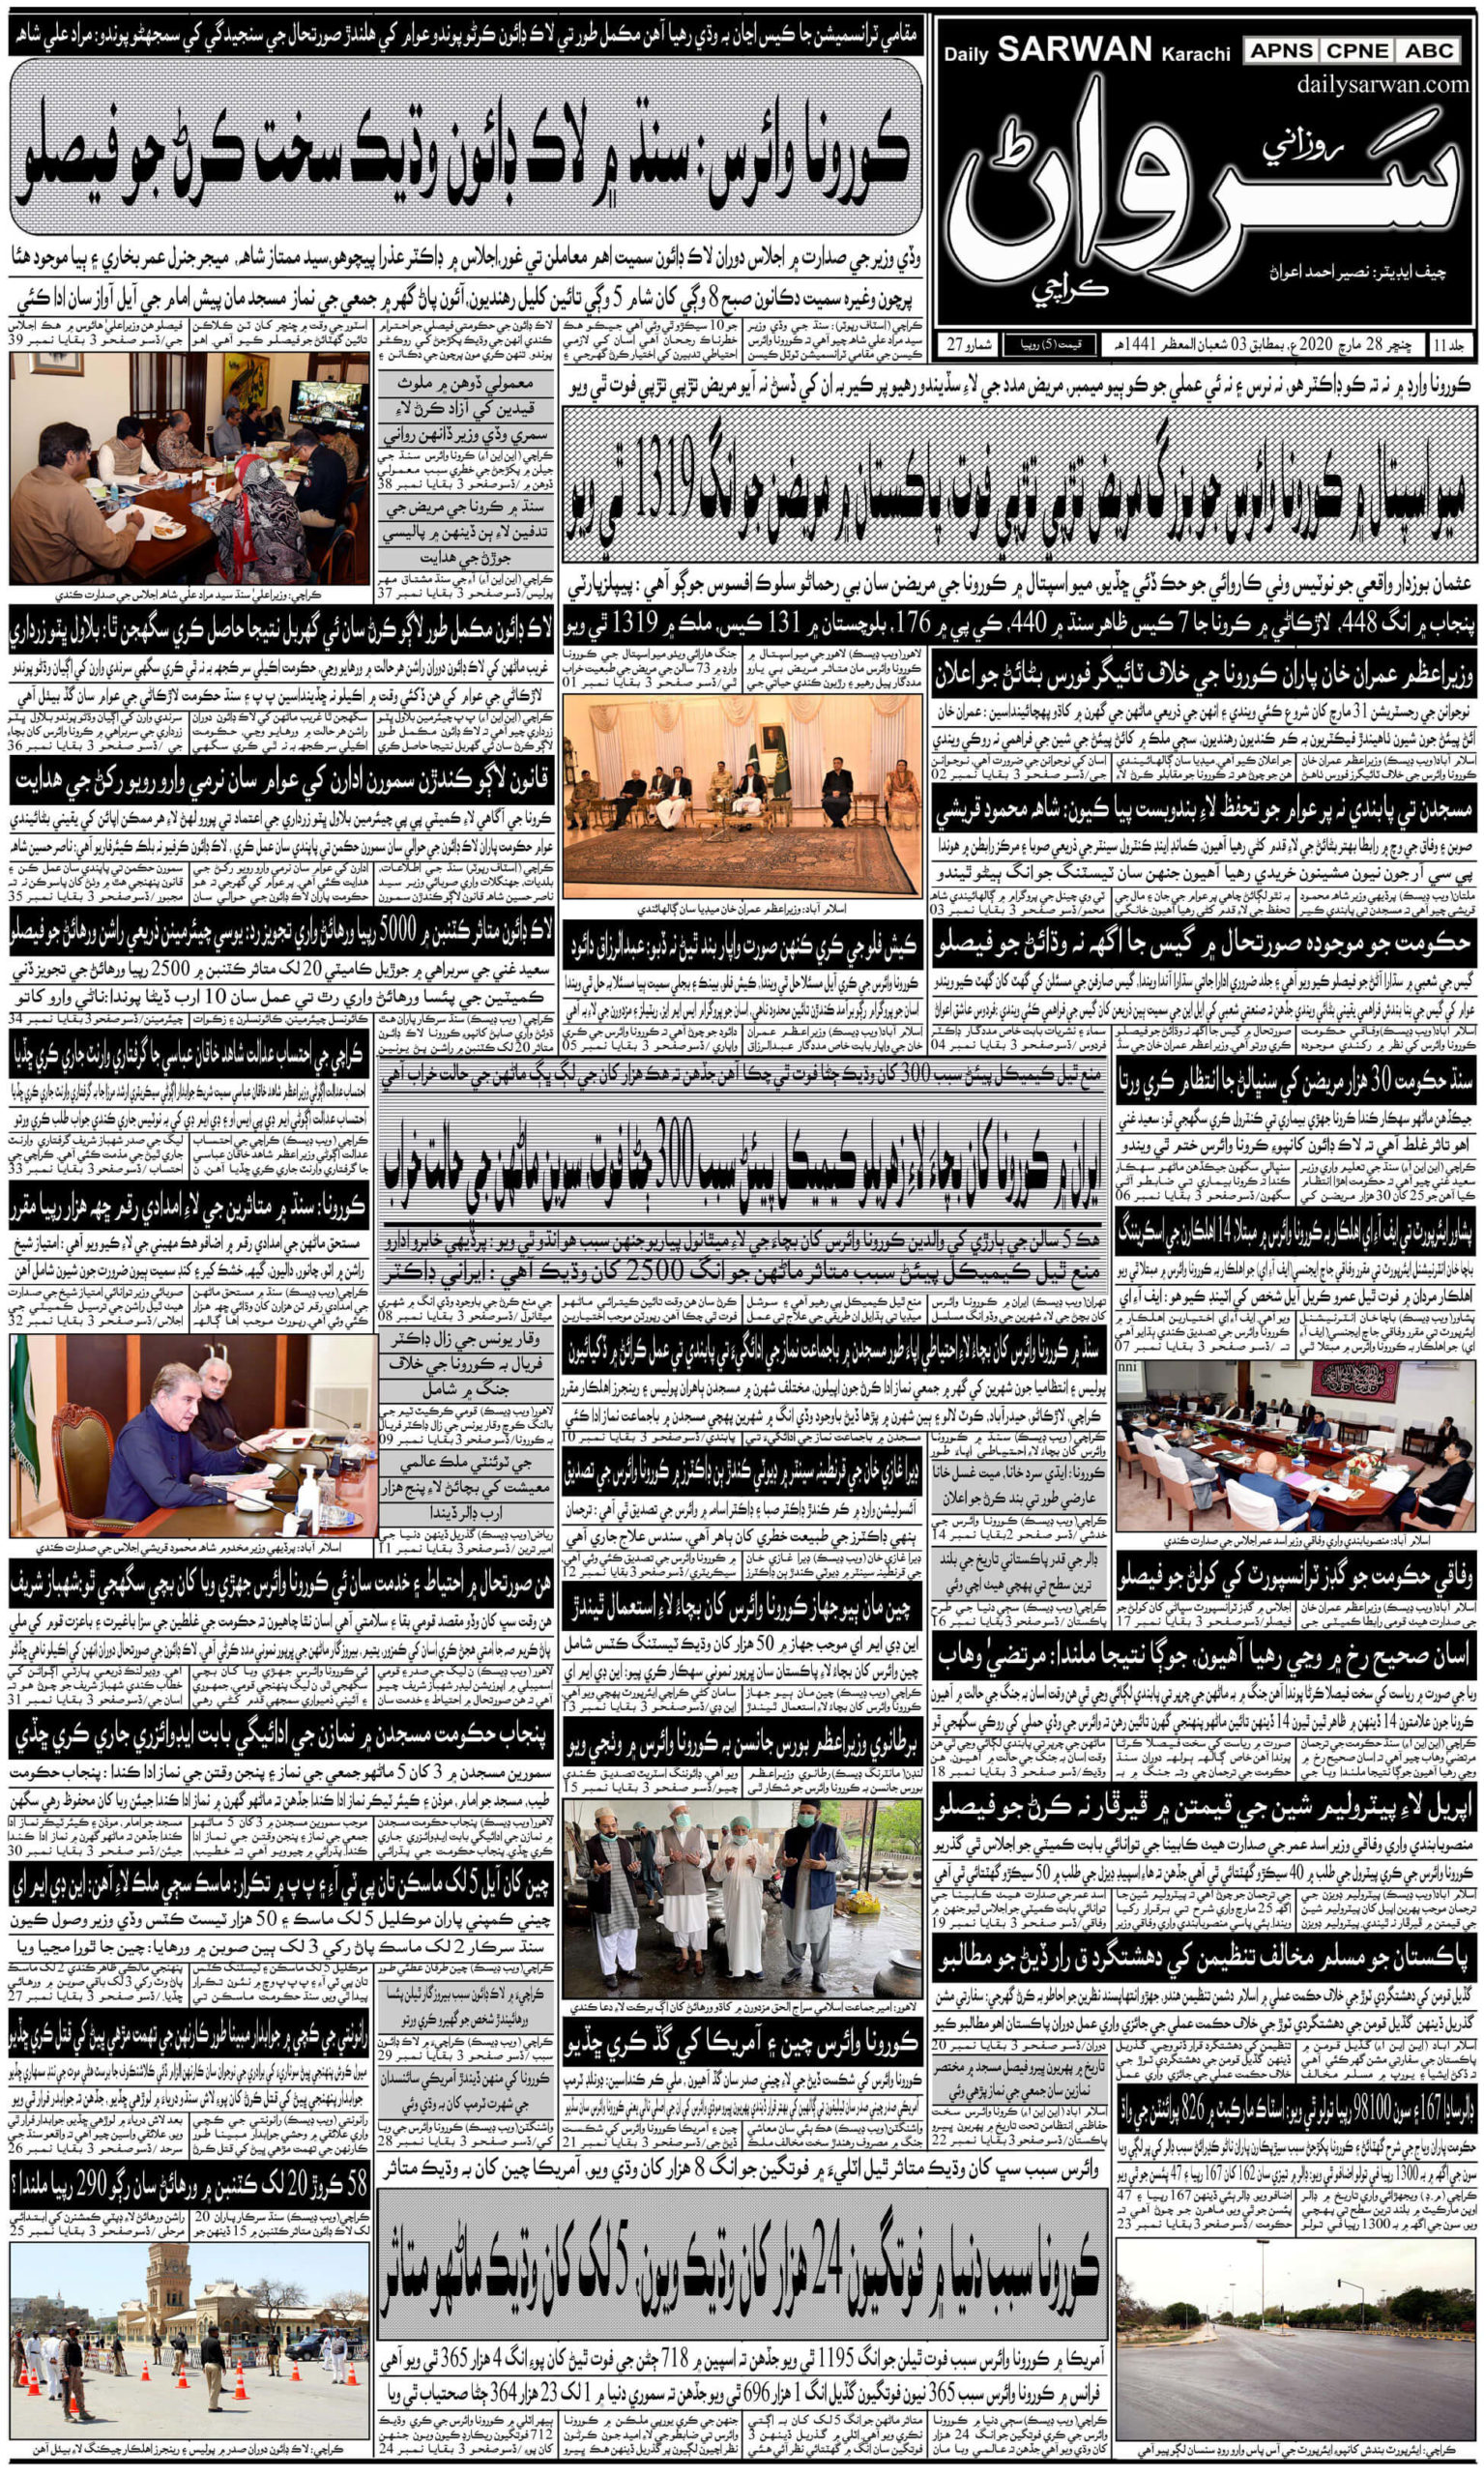 pakistan urdu newspapers 42 daily sarwan scaled